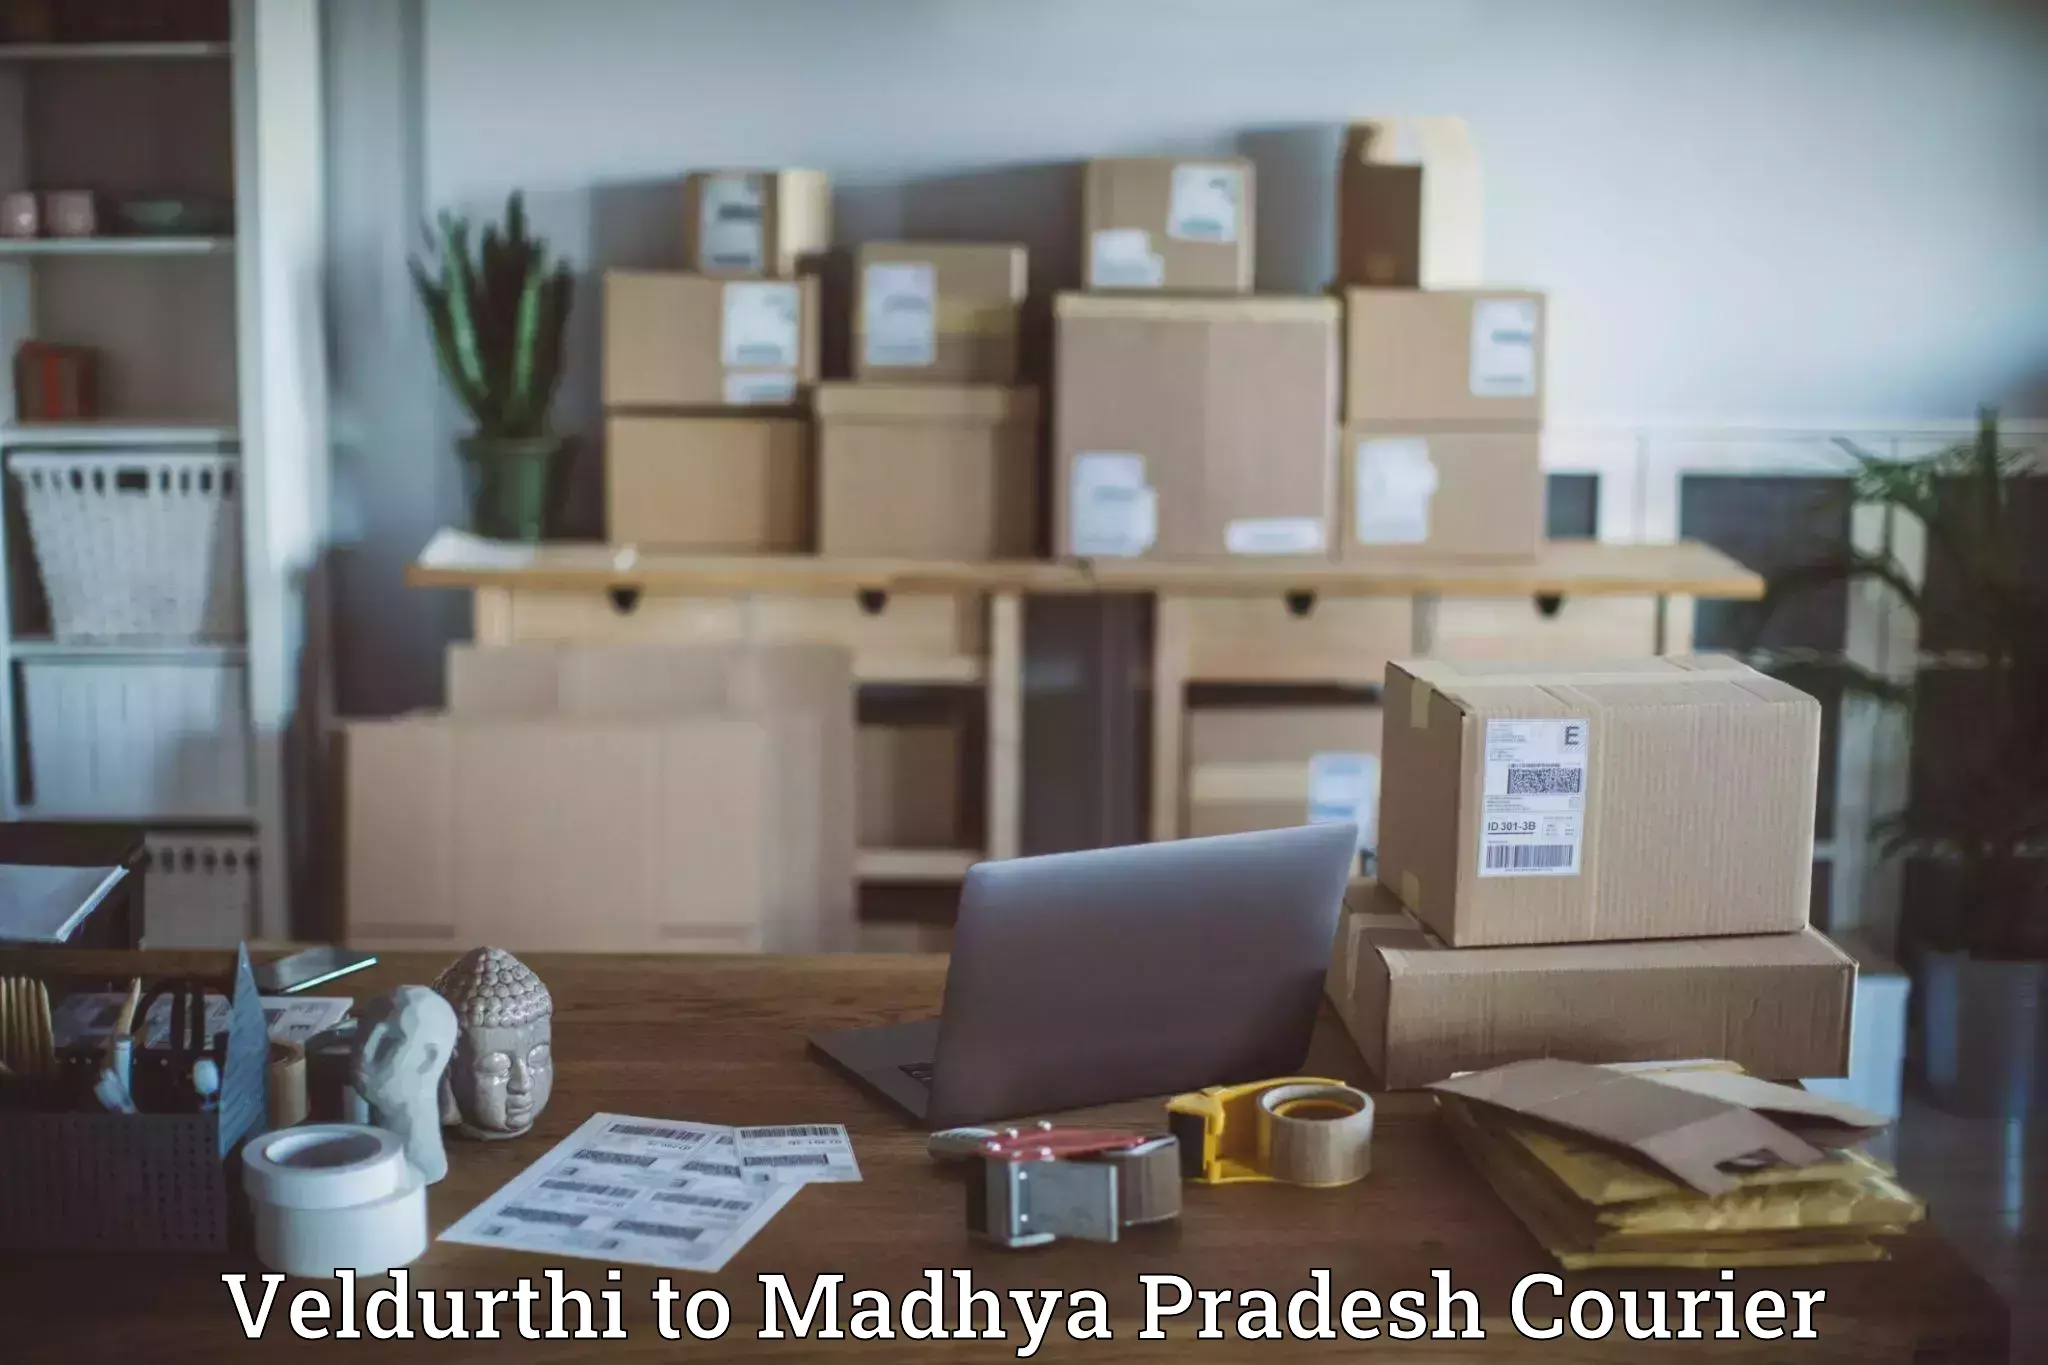 Multi-national courier services Veldurthi to Madhya Pradesh